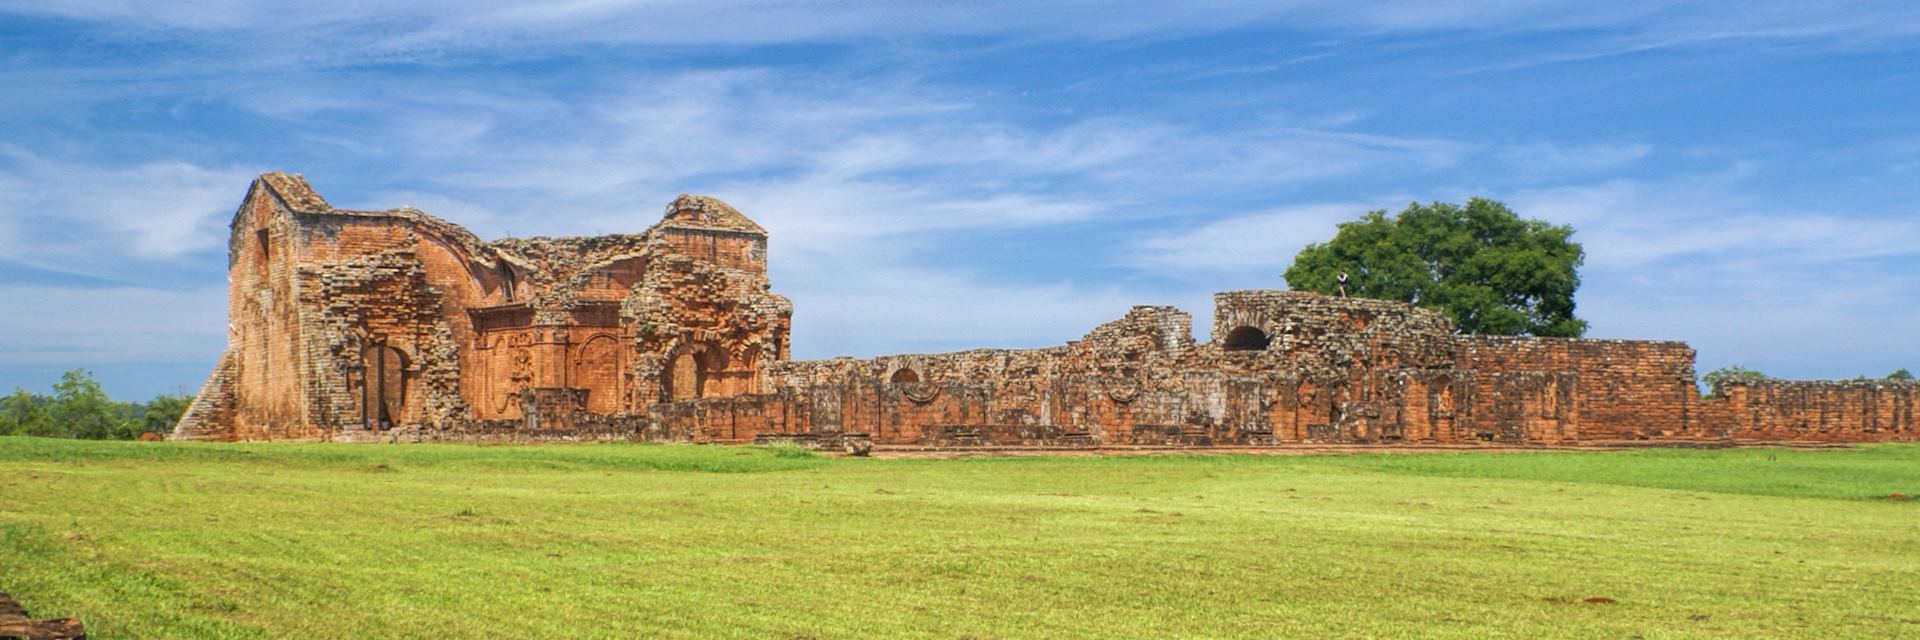 Encarnacion and Jesuit ruins, Paraguay